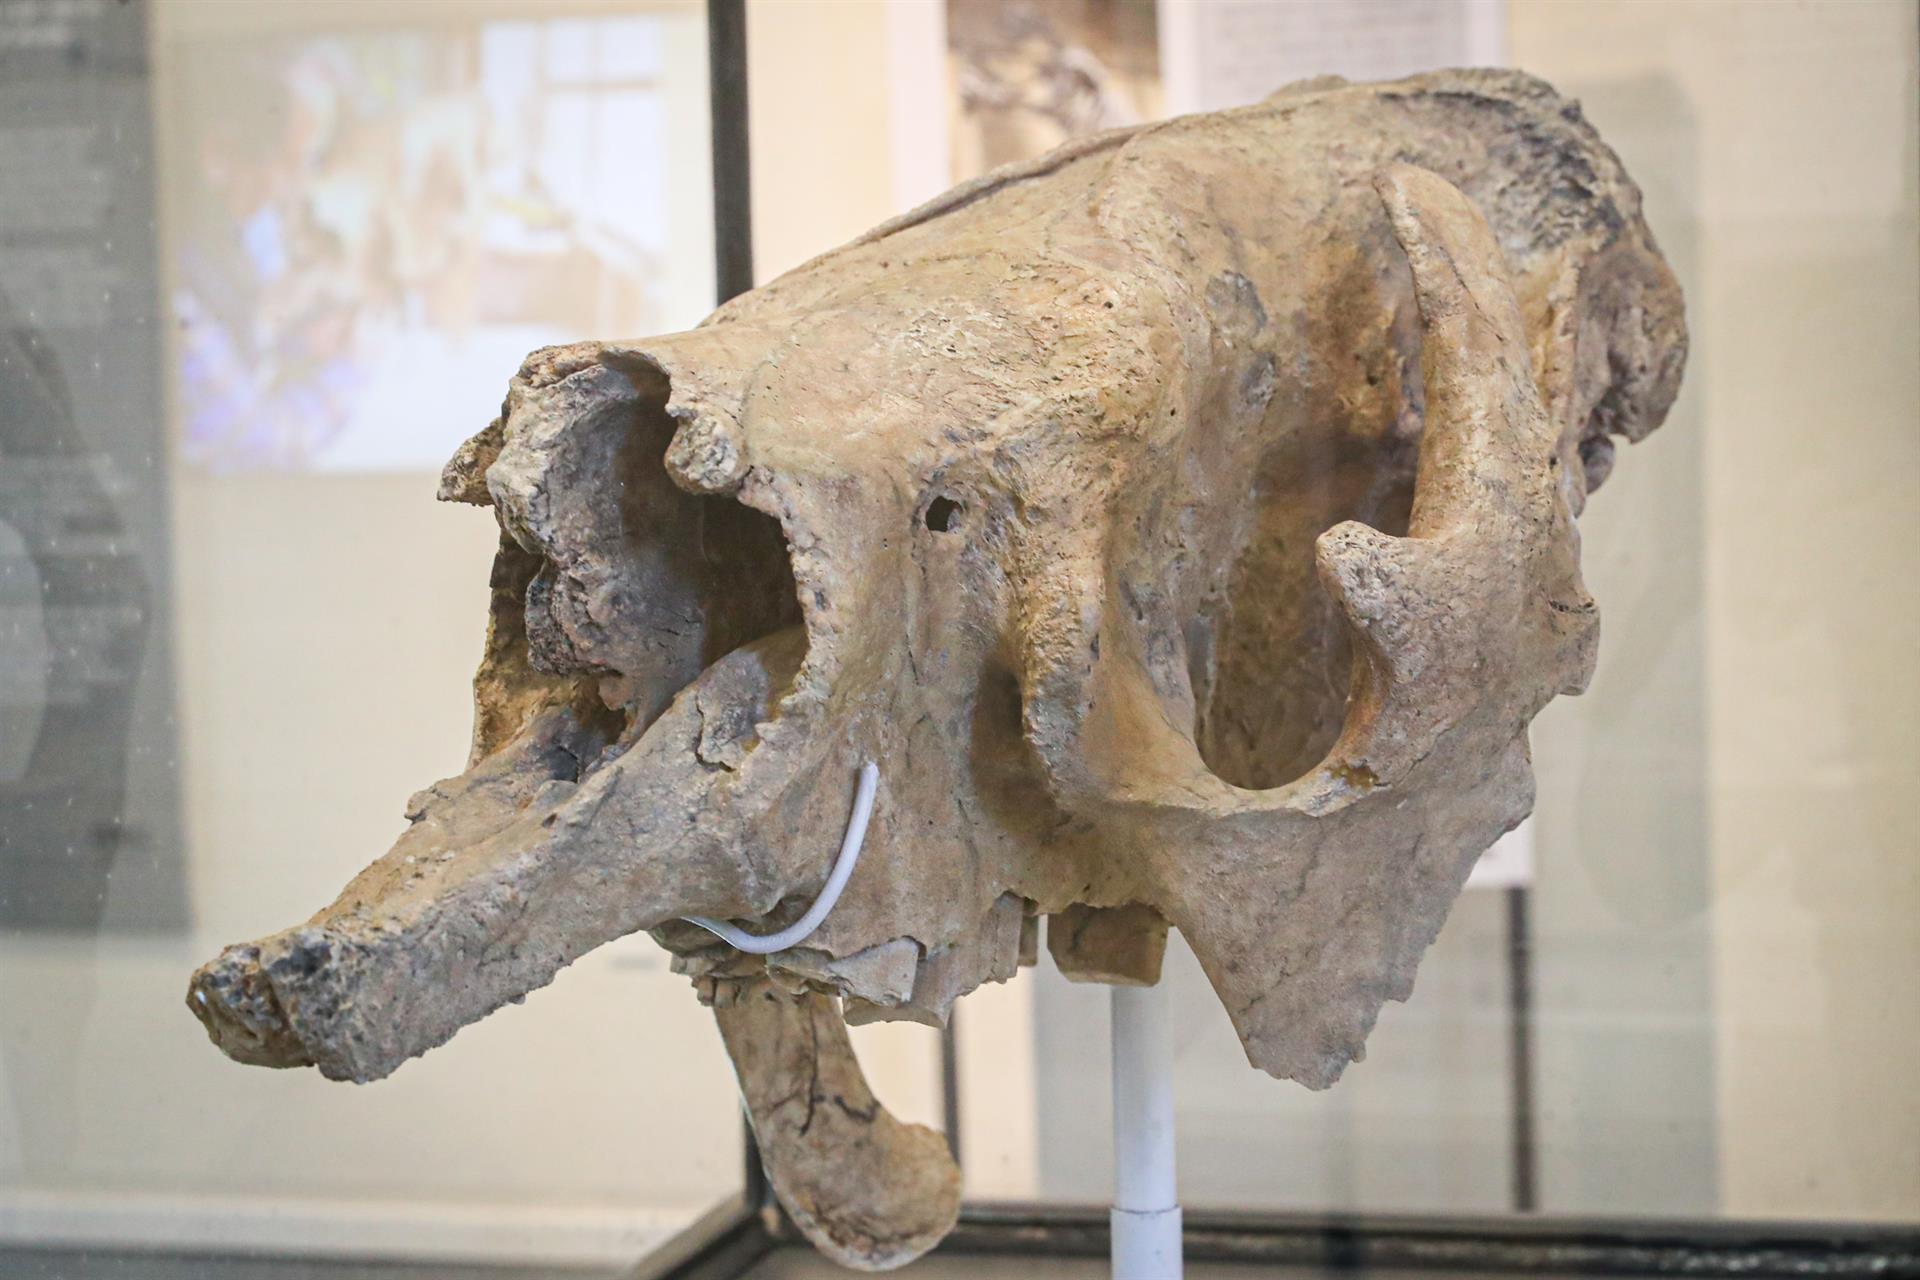 Vuelve la Edad de Hielo con un cráneo de un perezoso gigante hallado en Uruguay